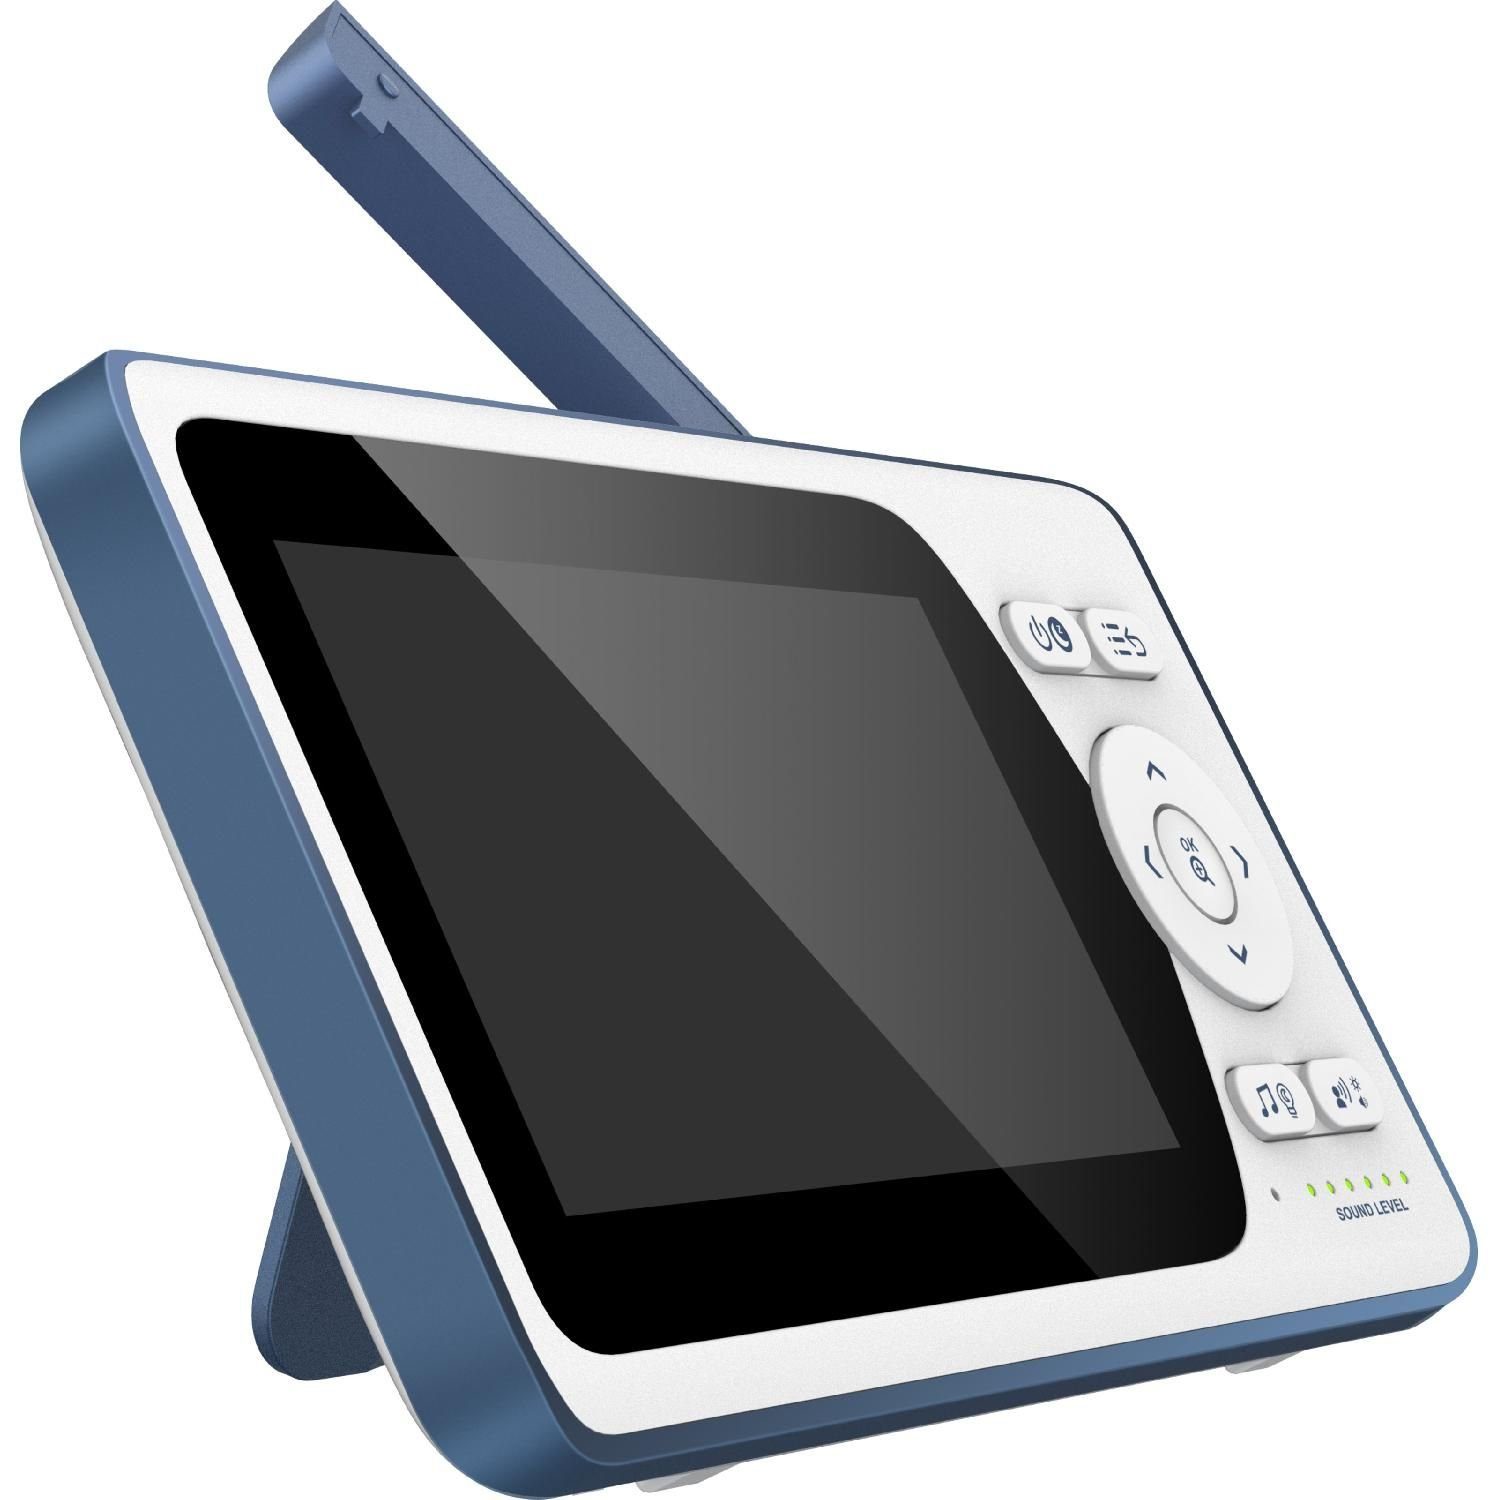 Video-Babyphone VM-M500 640x480px 4.3'' Video-Babyphone Telefunken Infrarotmodus Display